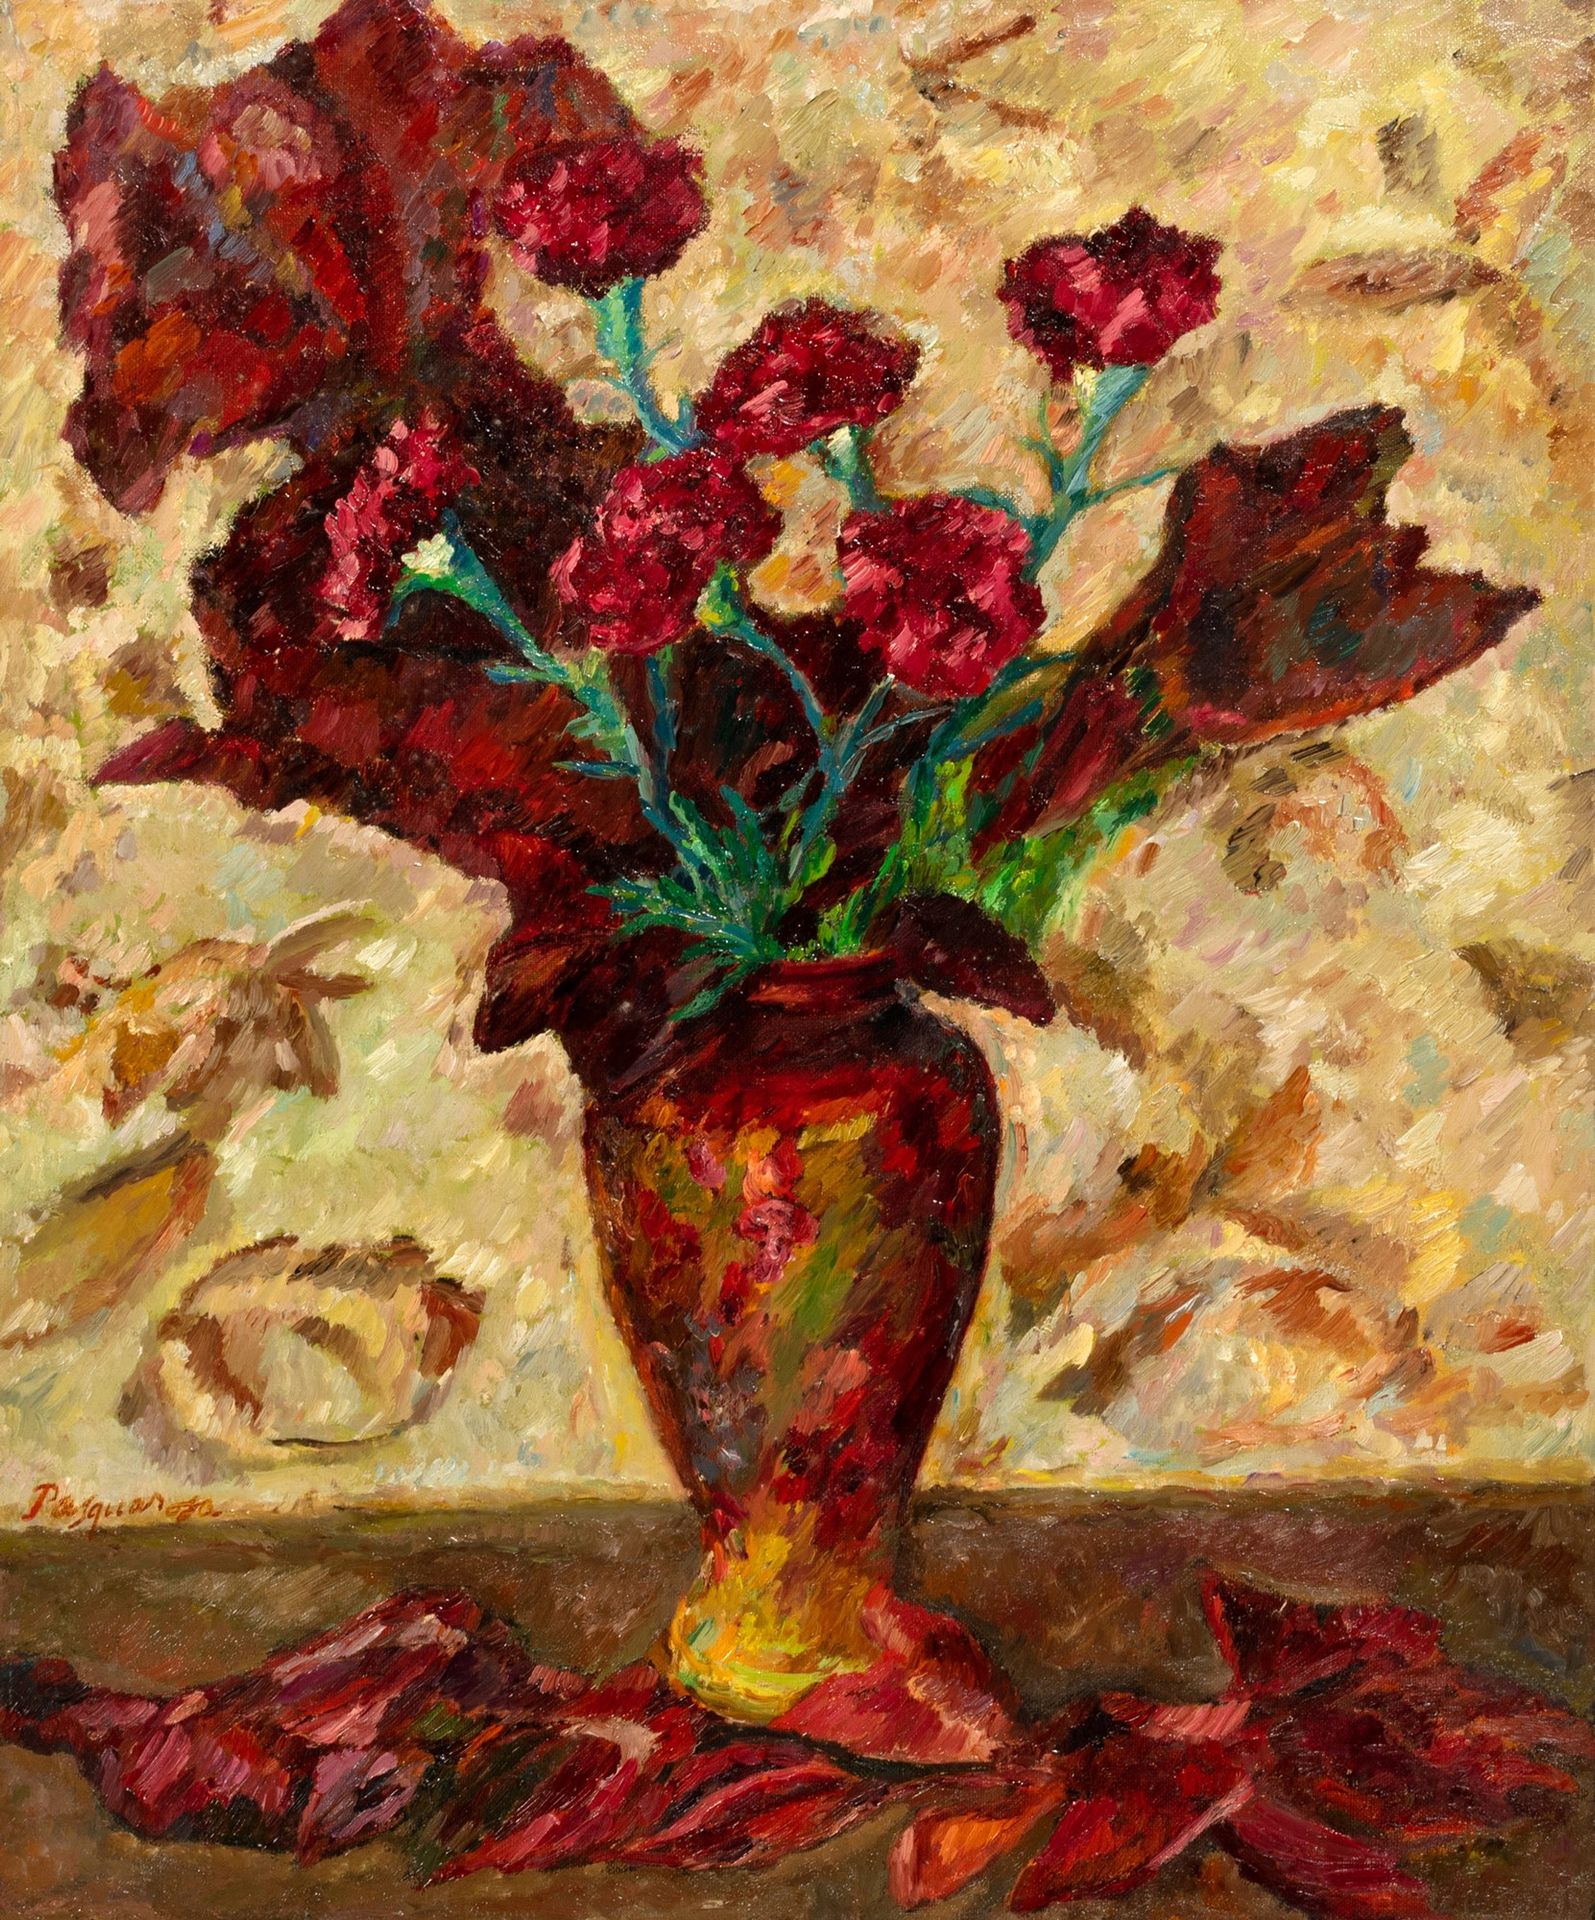 Pasquarosa Fleurs

huile sur toile
65 x 50 cm
Signé en bas à gauche : Pasquarosa&hellip;